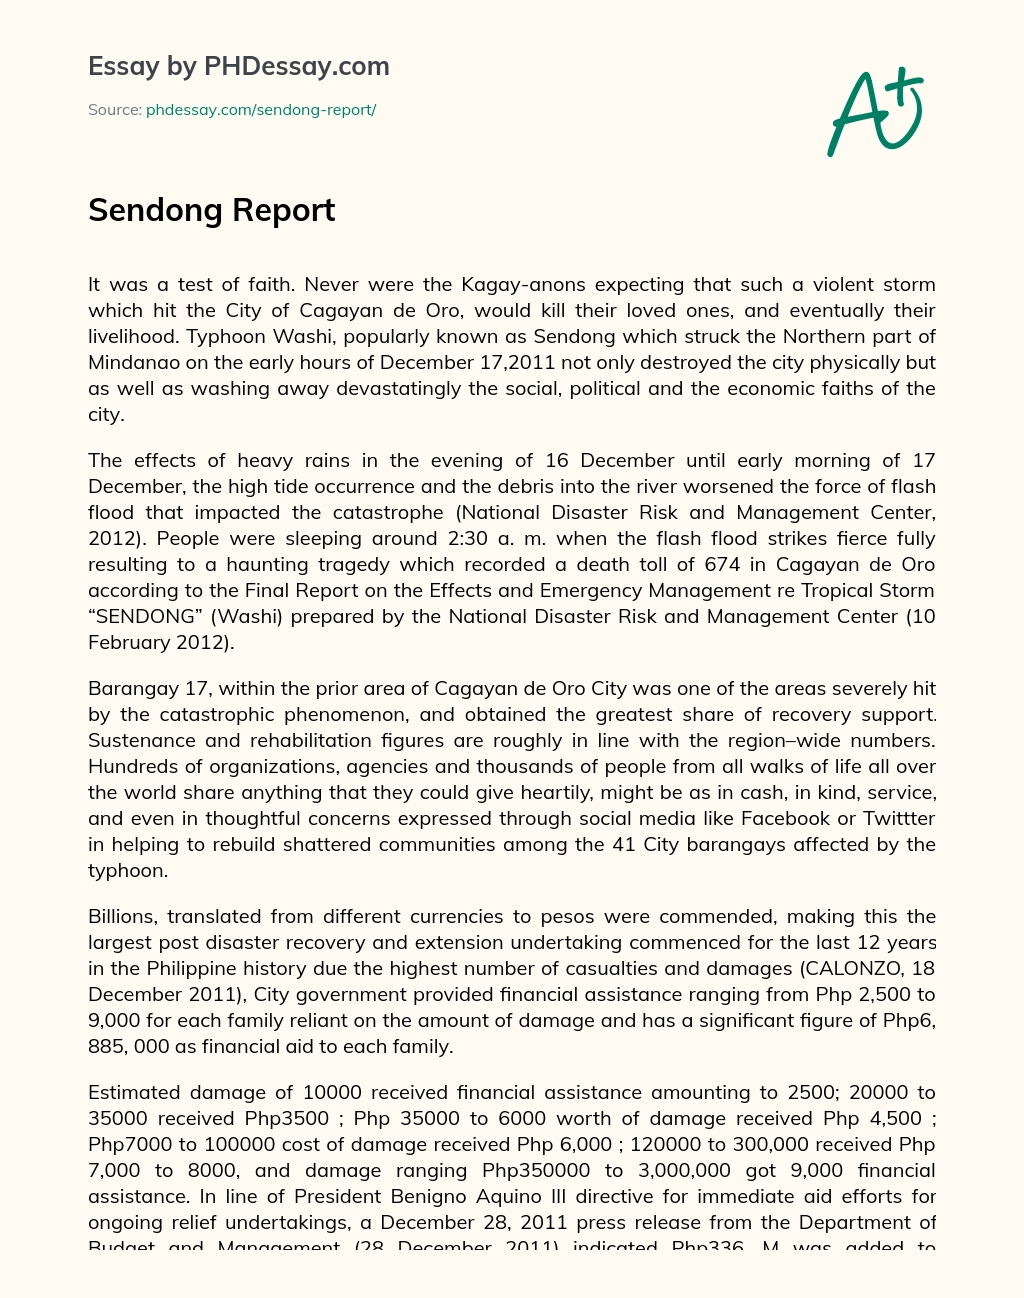 Sendong Report essay